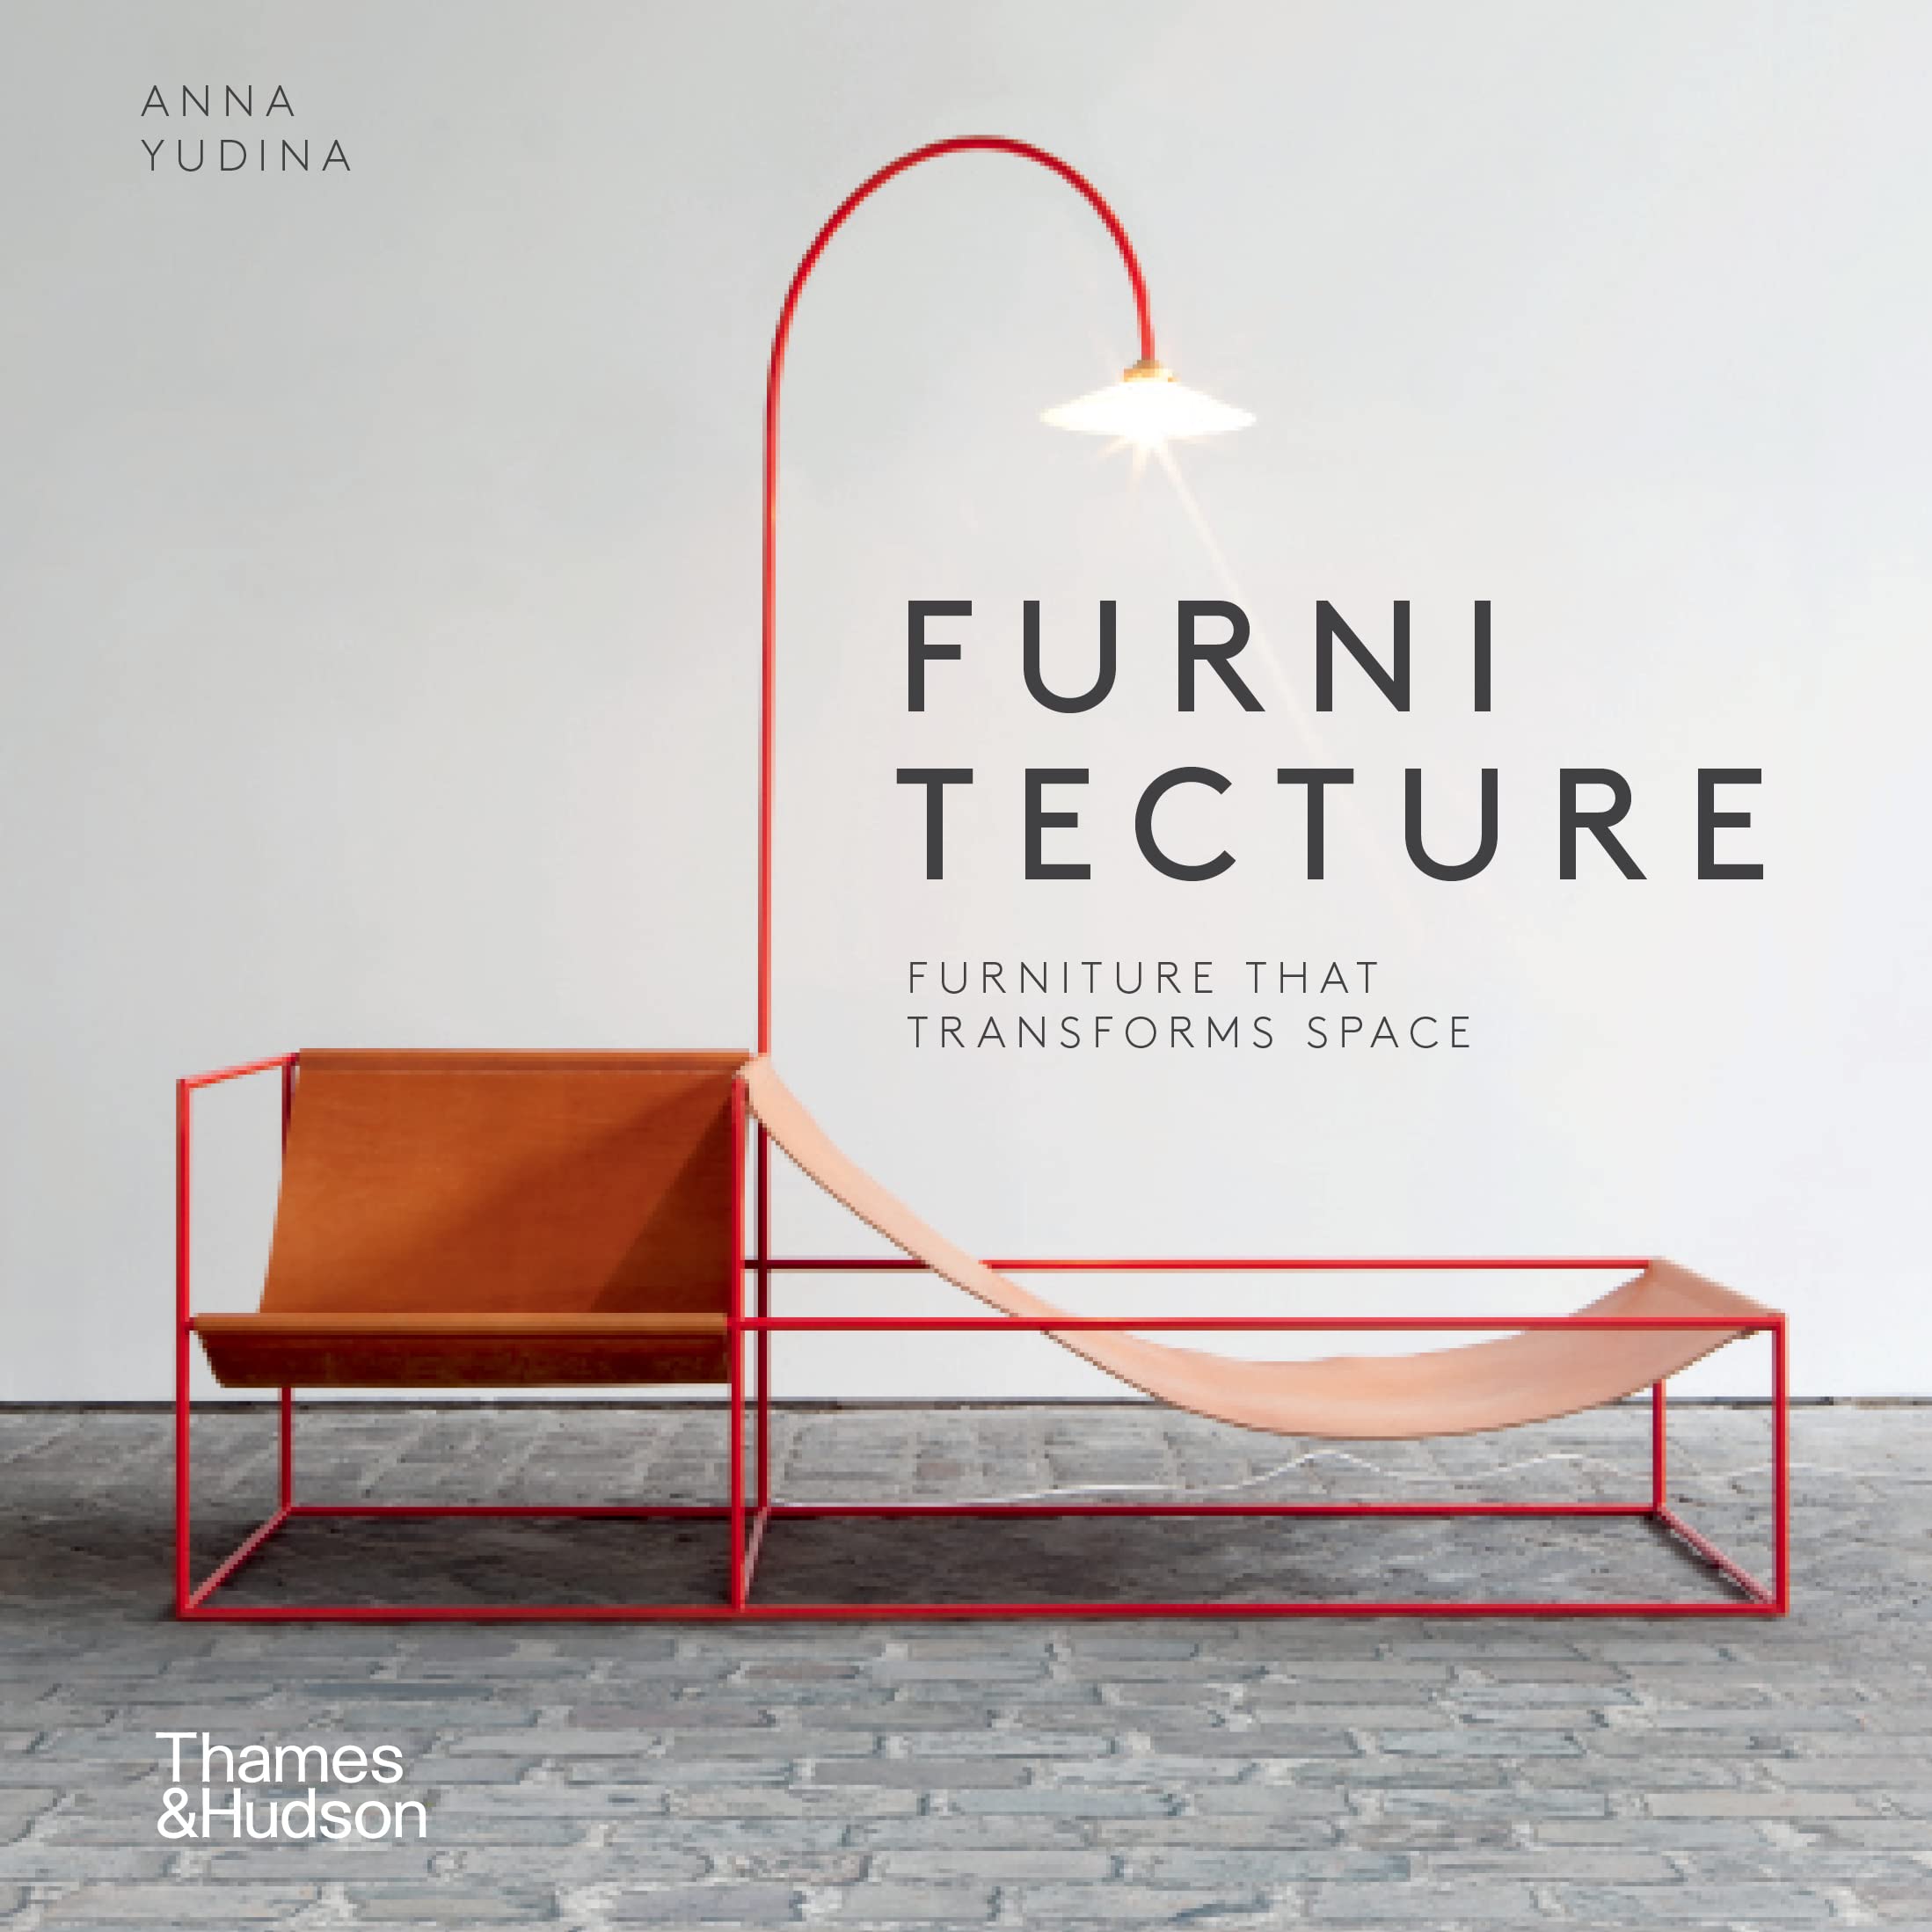 【预售】 Furni tecture 进口艺术 改变空间格局的家具 空间的合理利用 英文原版现代创意家具设计作品集室内格局设计书籍